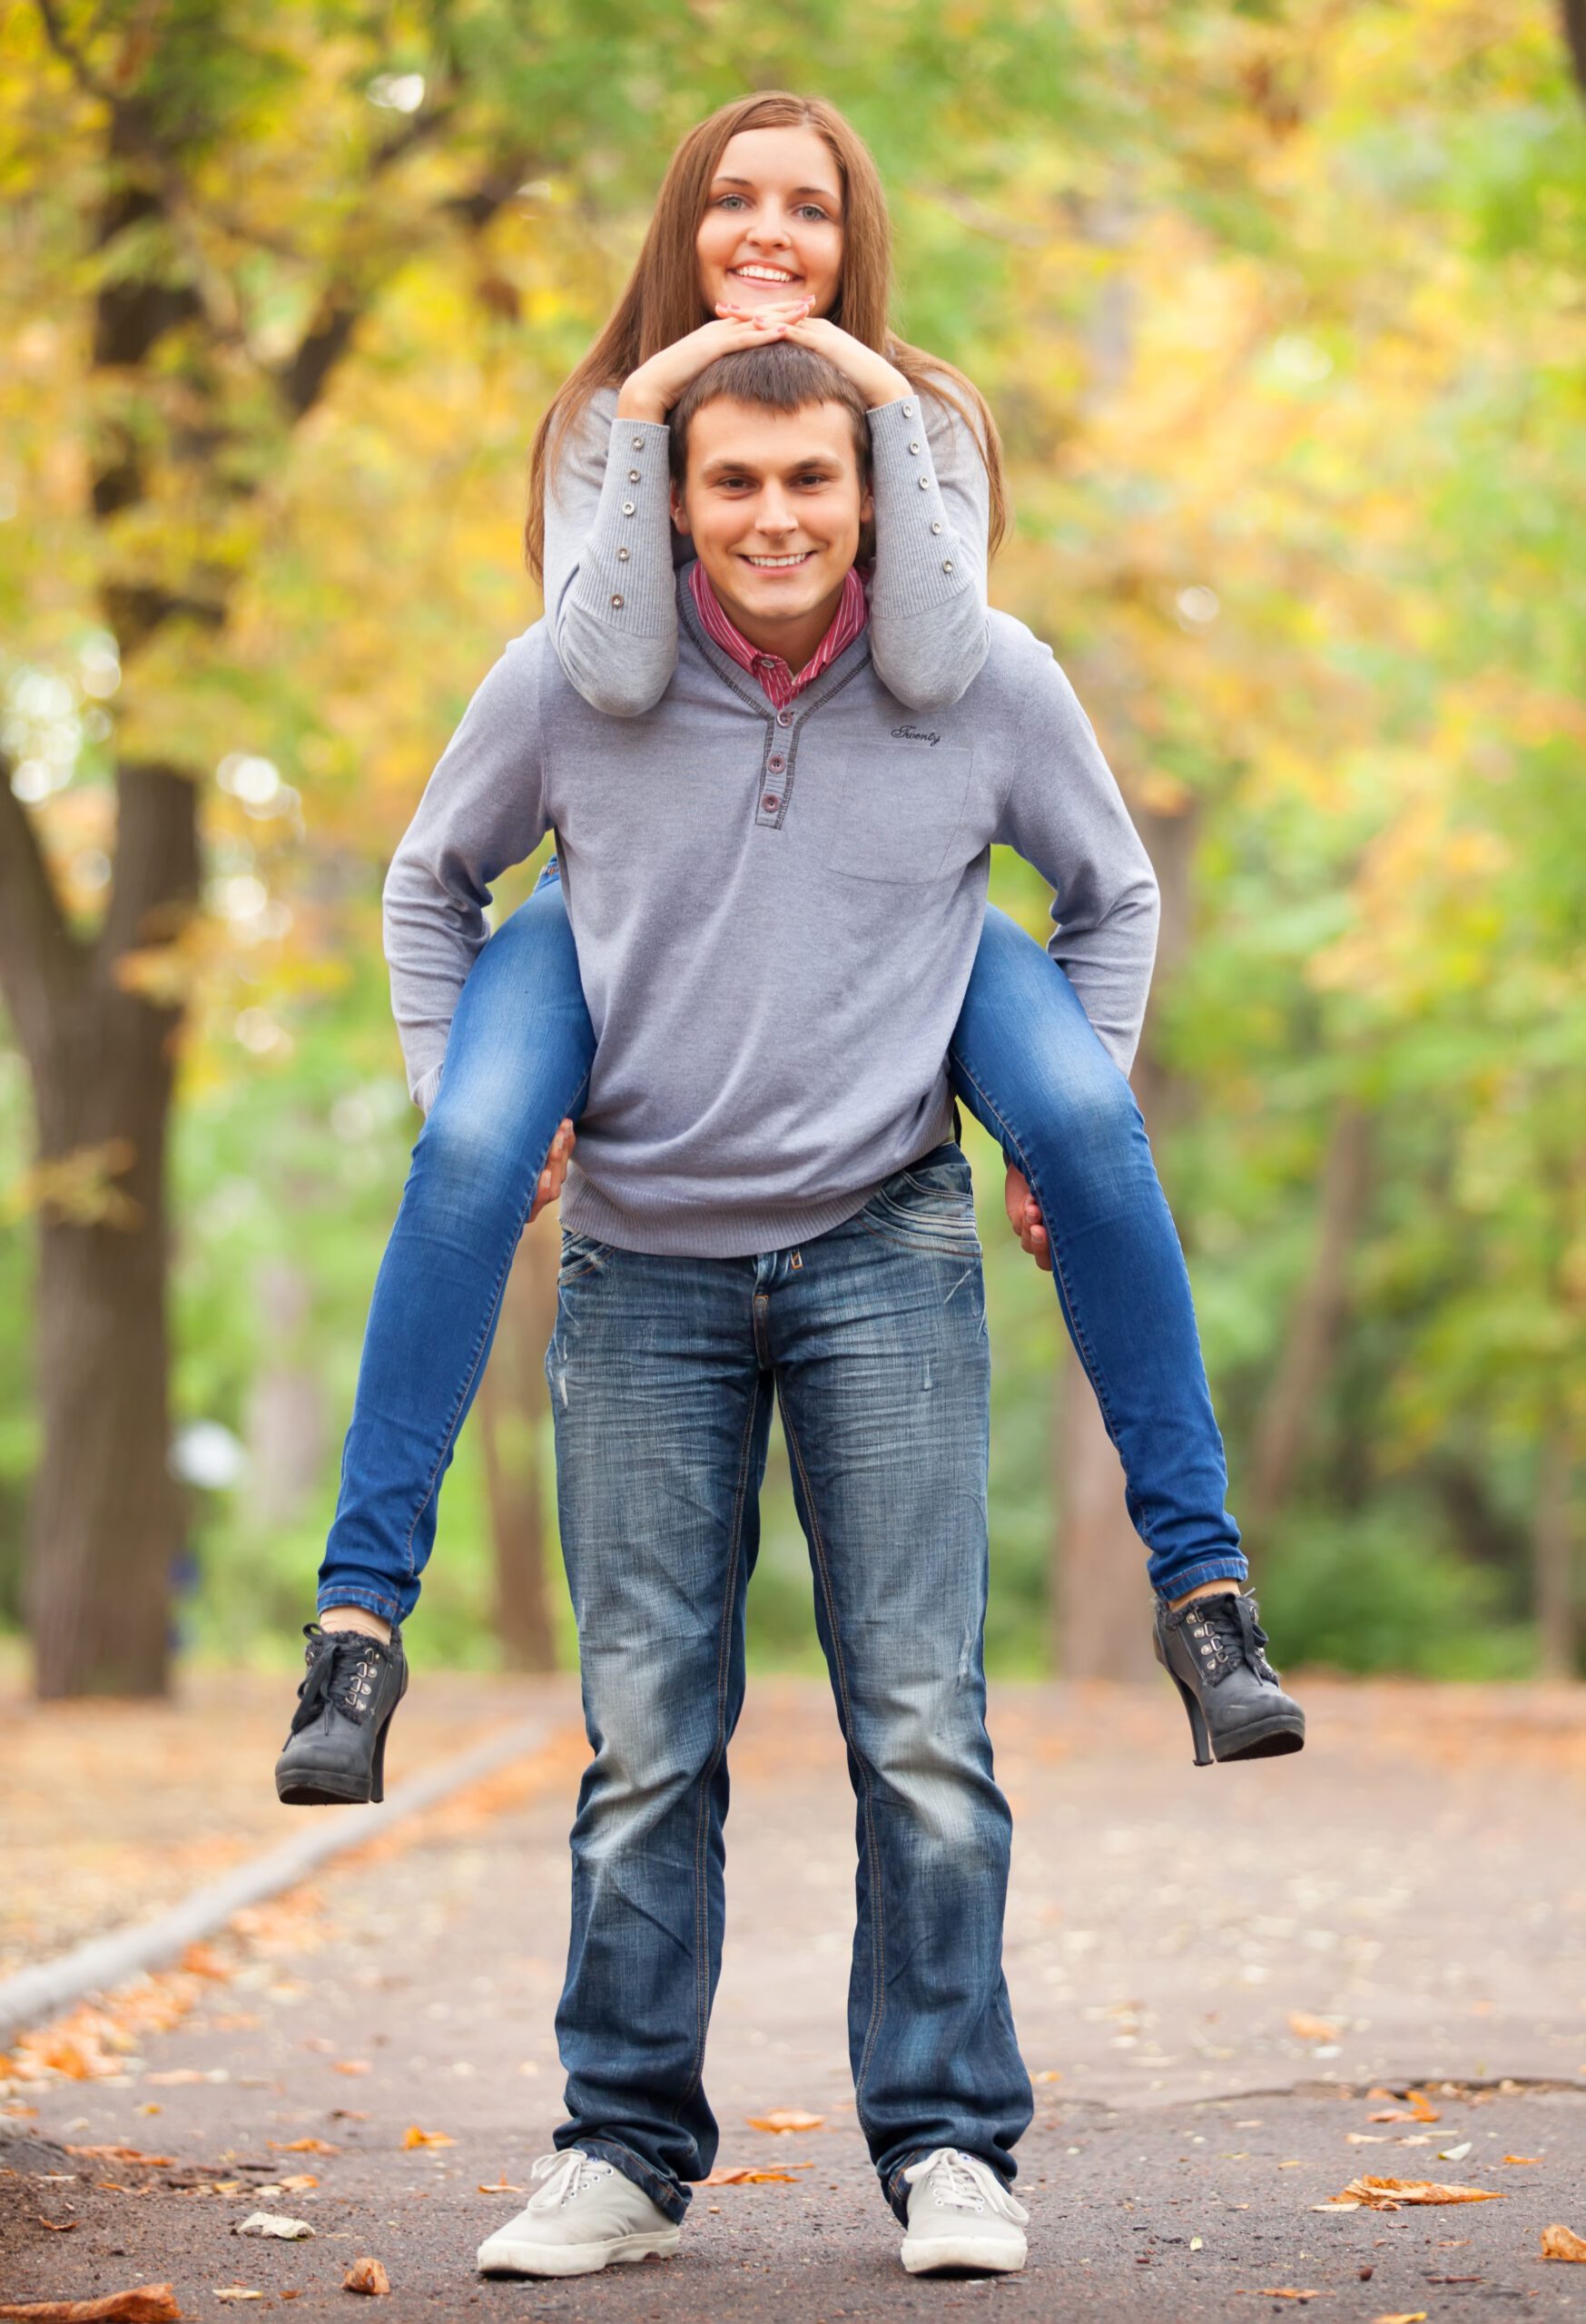 Teen couple at autumn park